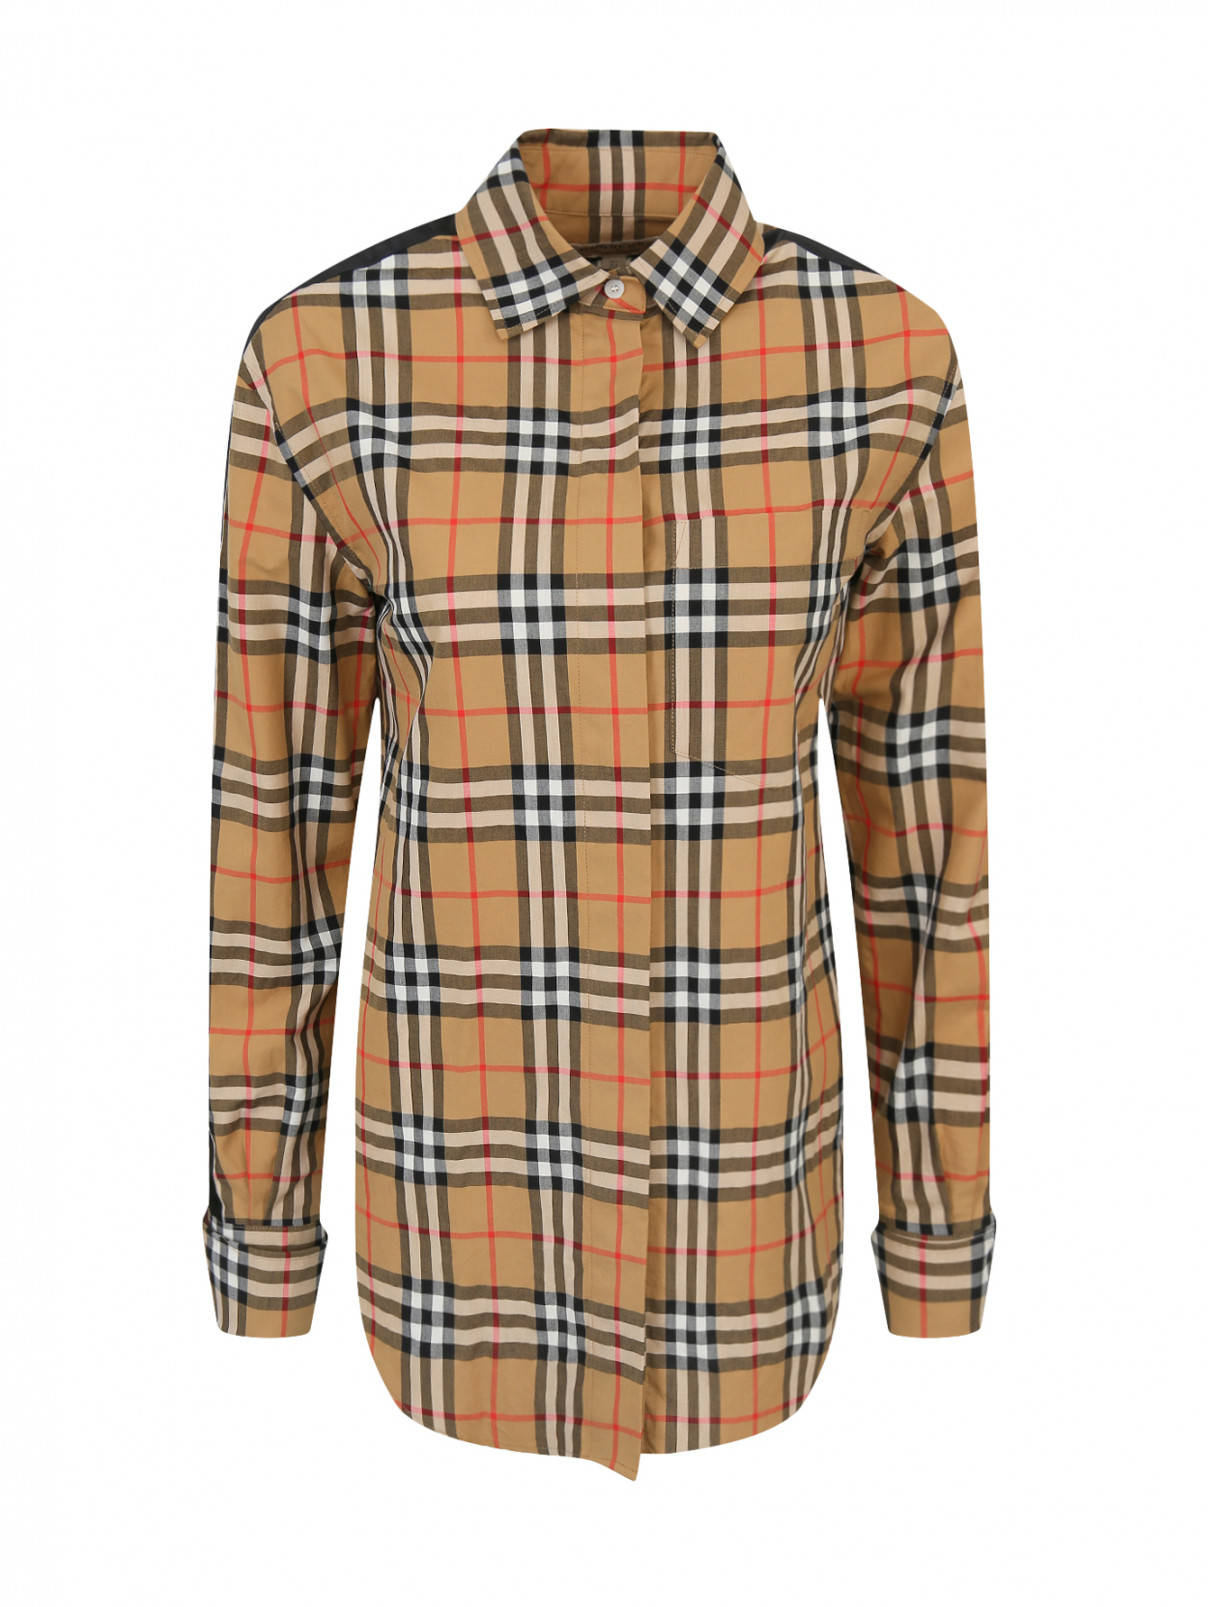 Рубашка из хлопка с узором "клетка" Burberry  –  Общий вид  – Цвет:  Бежевый